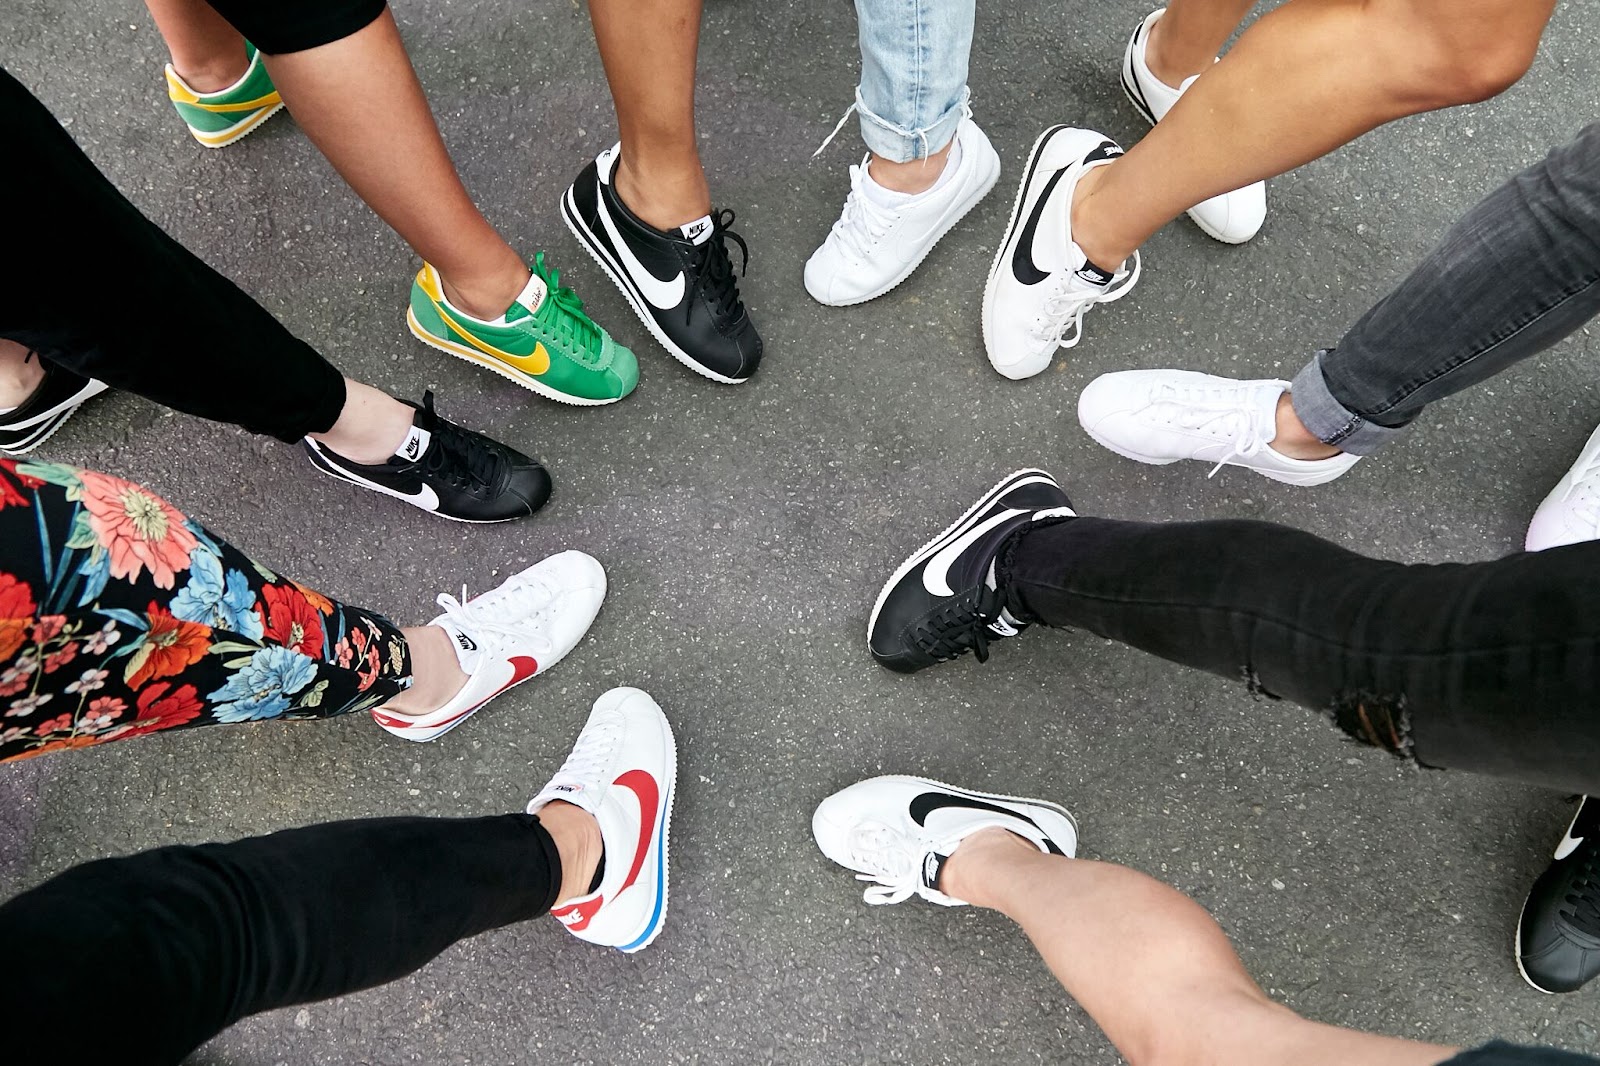 Phong cách thiết kế của giày Nike 